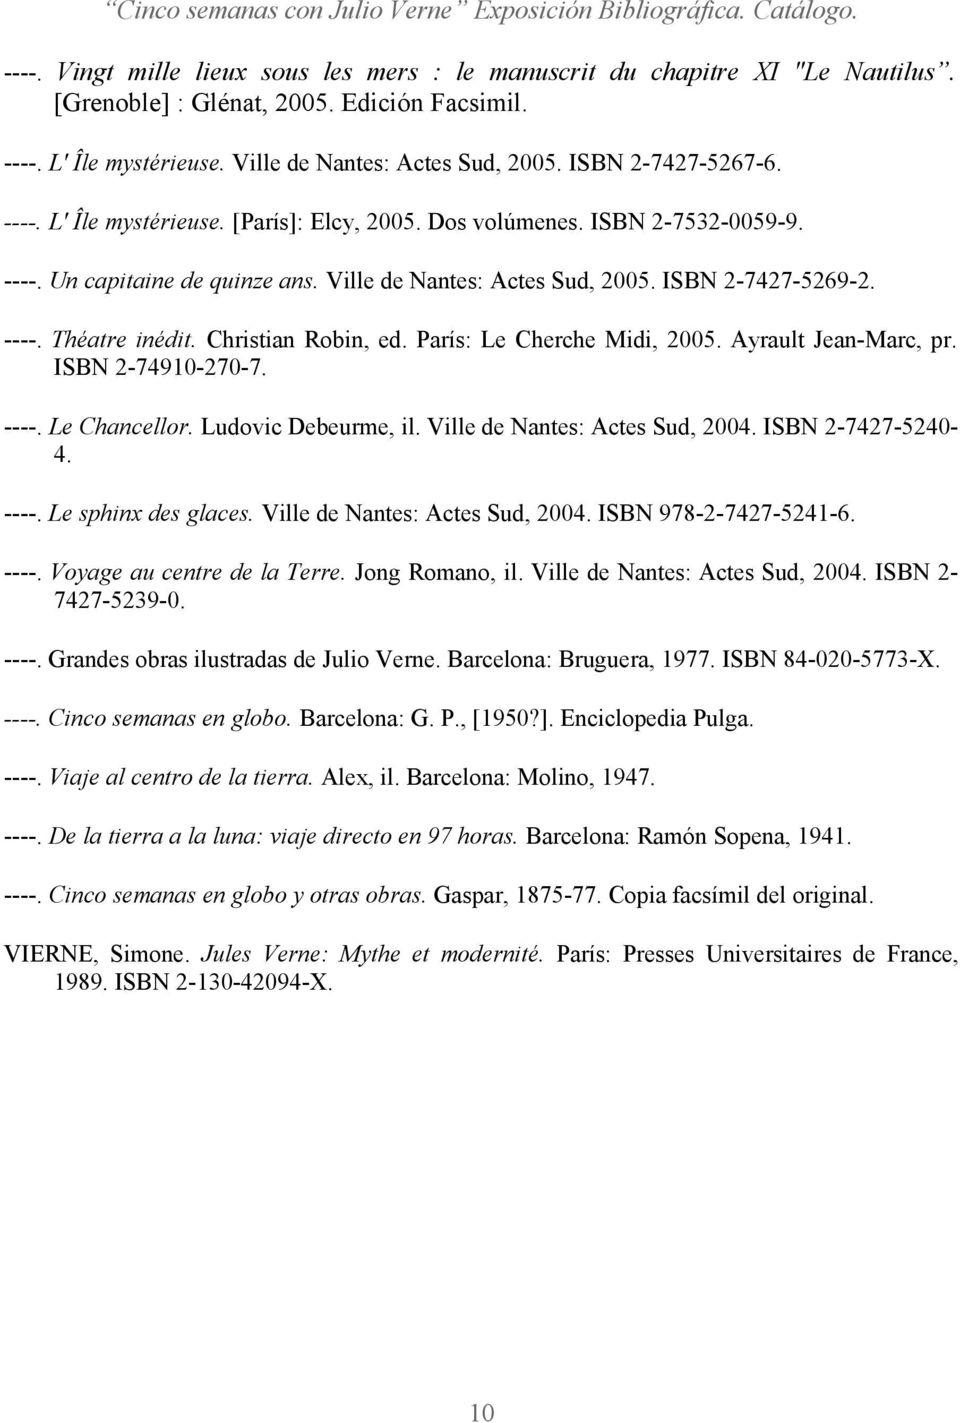 Christian Robin, ed. París: Le Cherche Midi, 2005. Ayrault Jean-Marc, pr. ISBN 2-74910-270-7. ----. Le Chancellor. Ludovic Debeurme, il. Ville de Nantes: Actes Sud, 2004. ISBN 2-7427-5240-4. ----. Le sphinx des glaces.